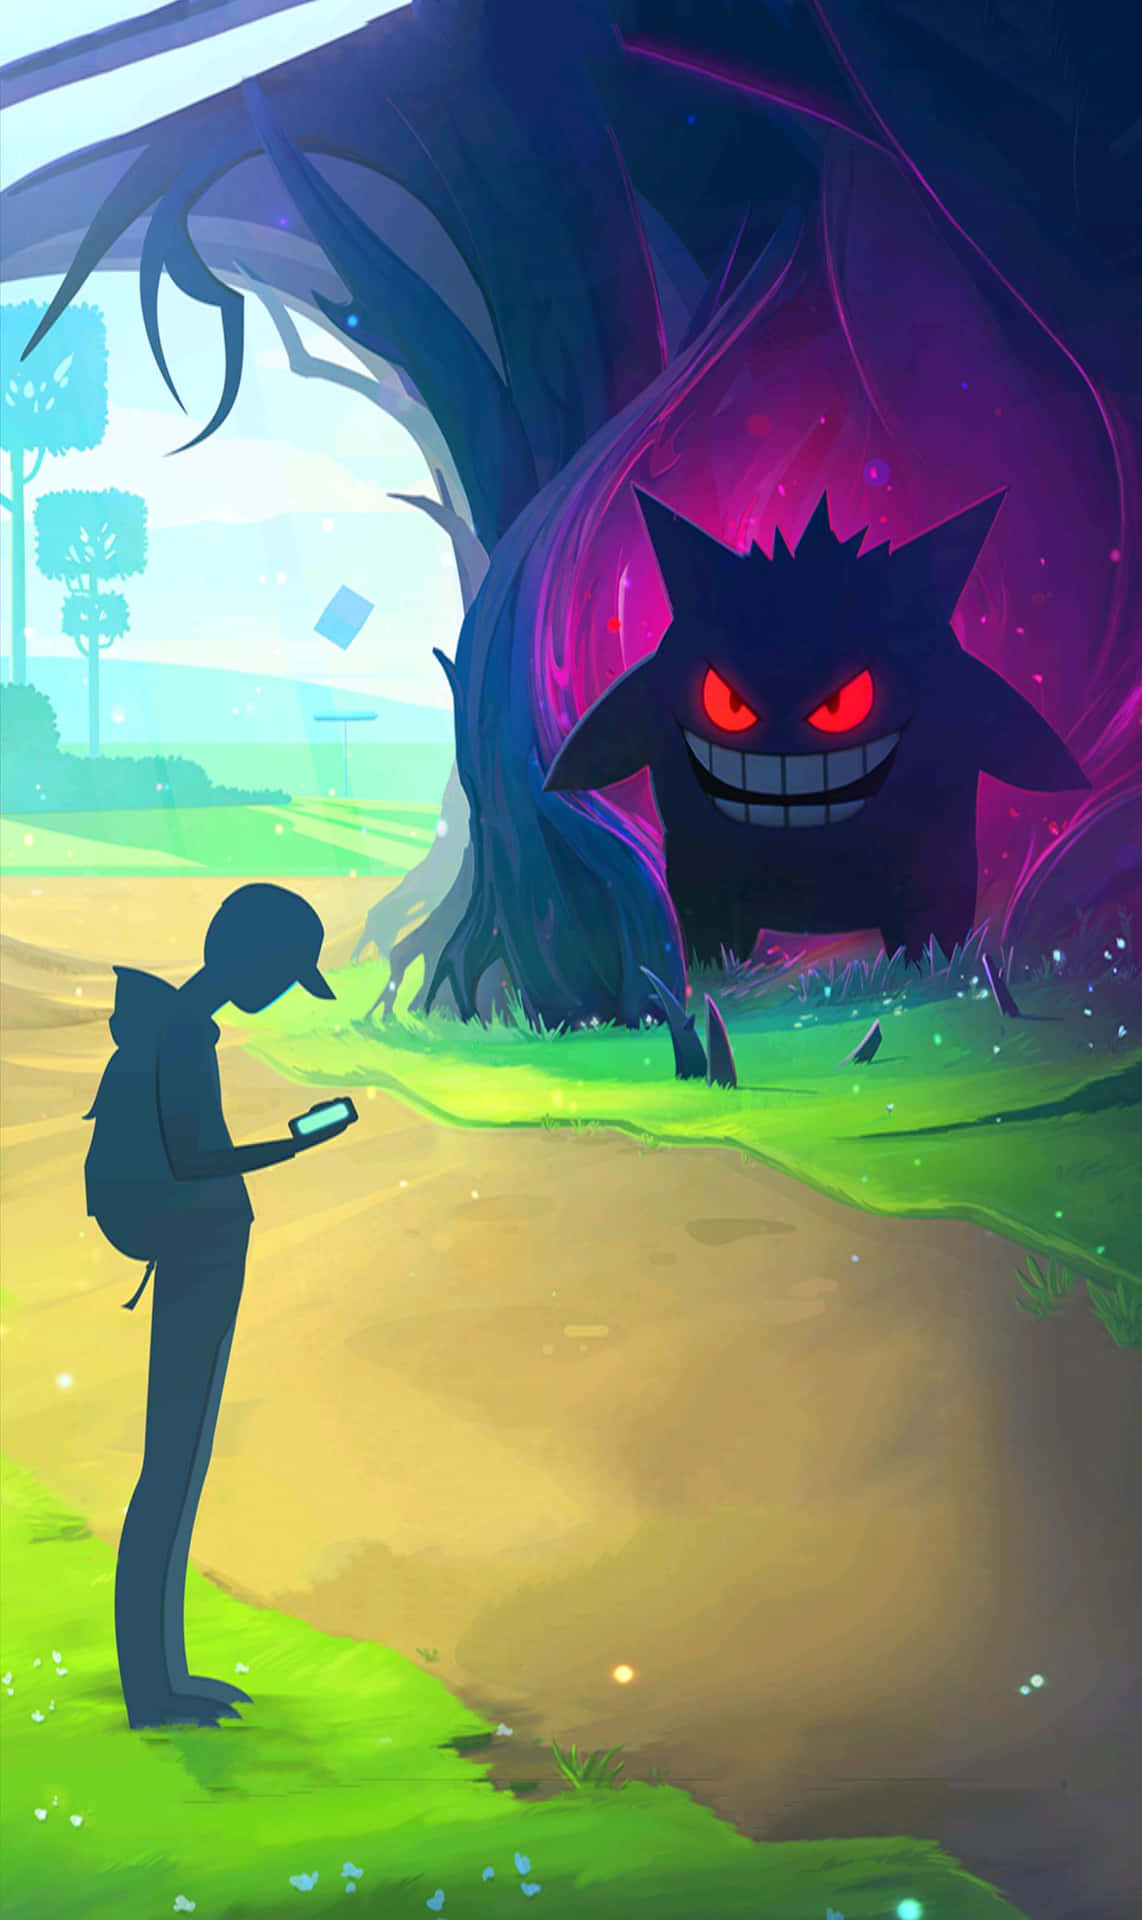 Kommin Stimmung Für Die Schaurige Jahreszeit Mit Diesem Festlichen Pokémon-halloween-wallpaper! Wallpaper